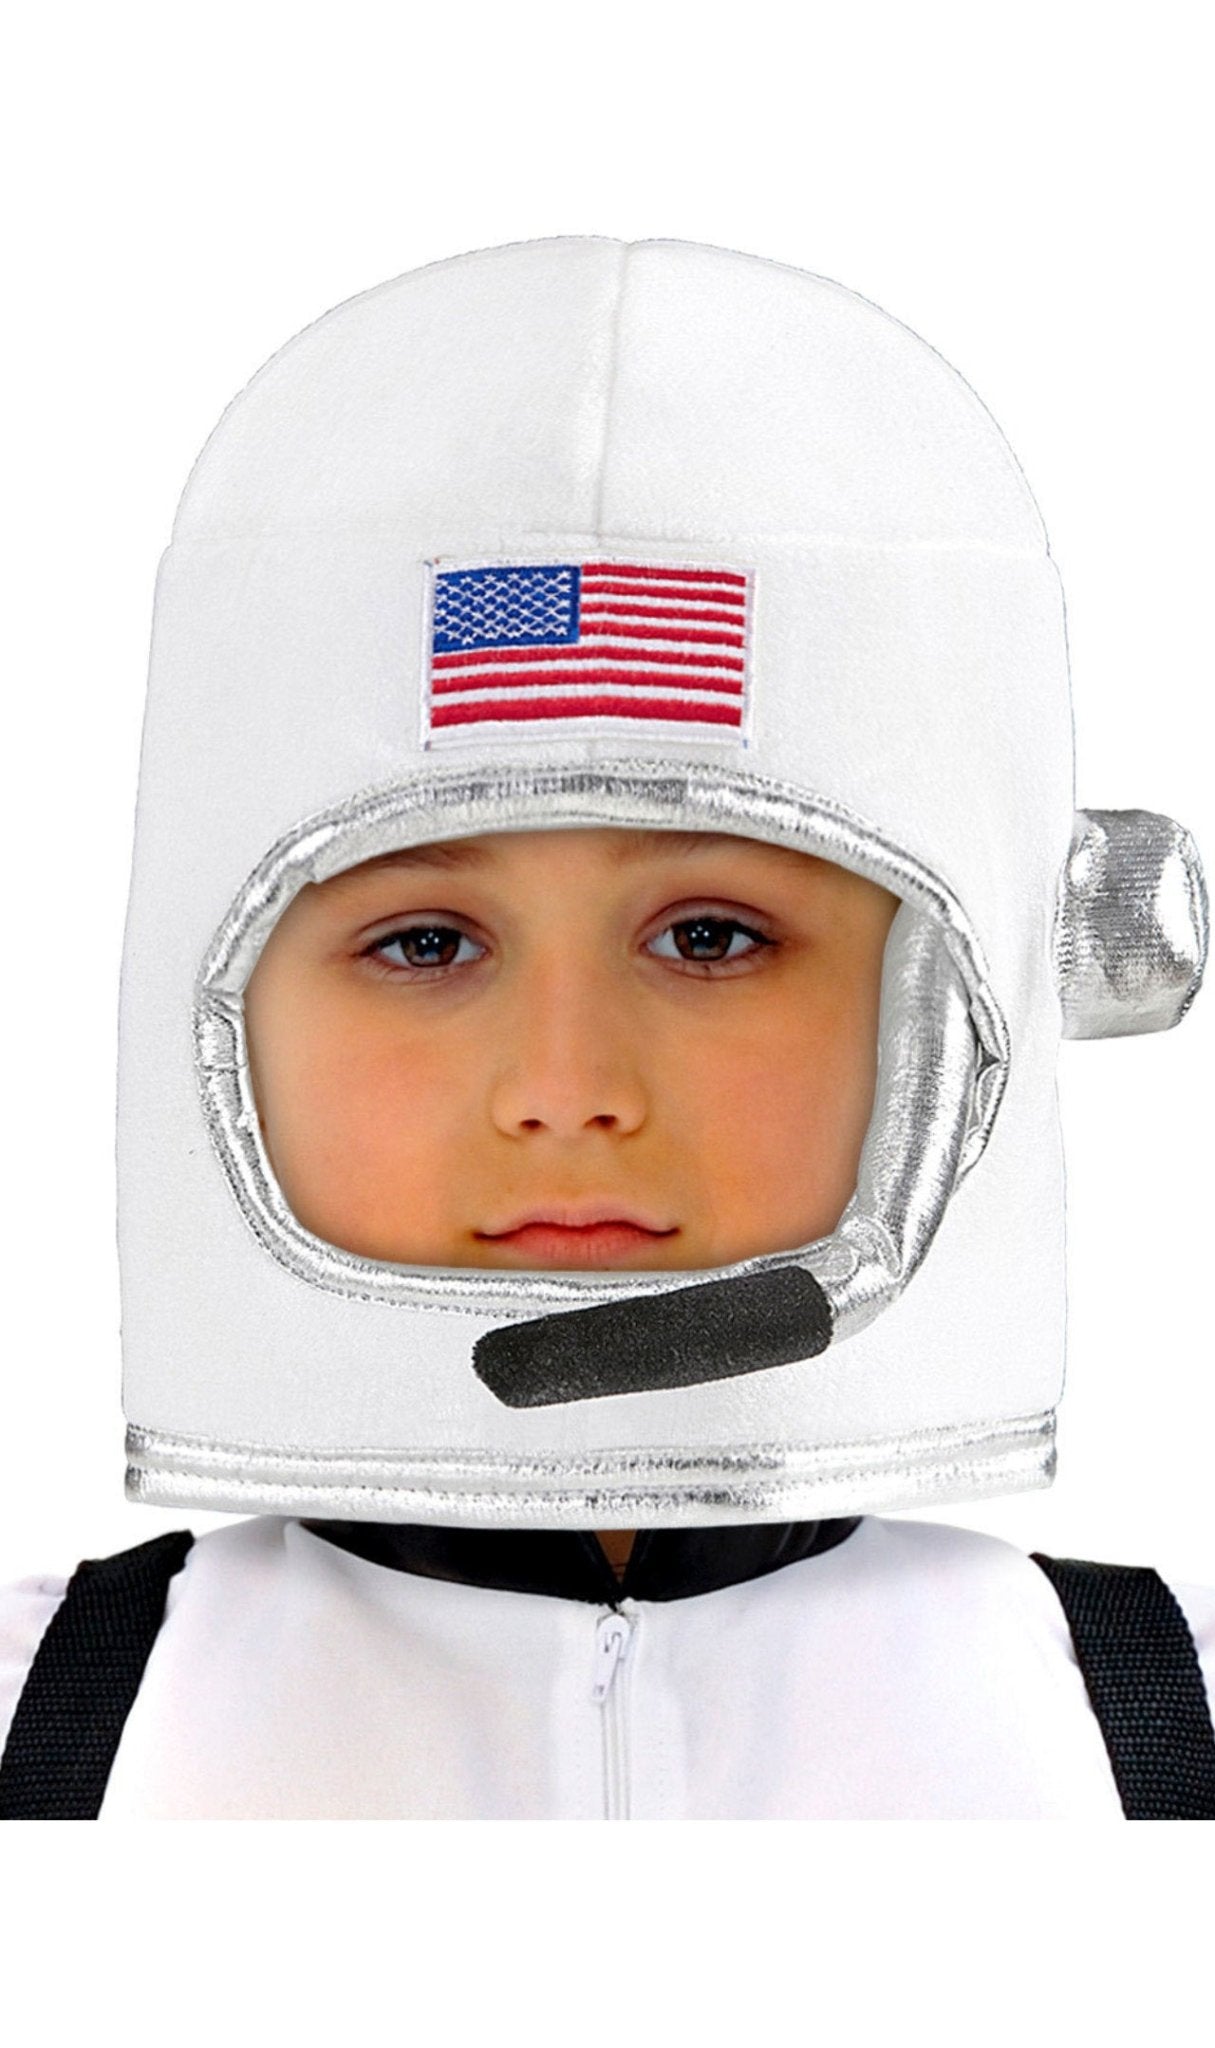 Casco de Astronauta Espacial para niño y niña